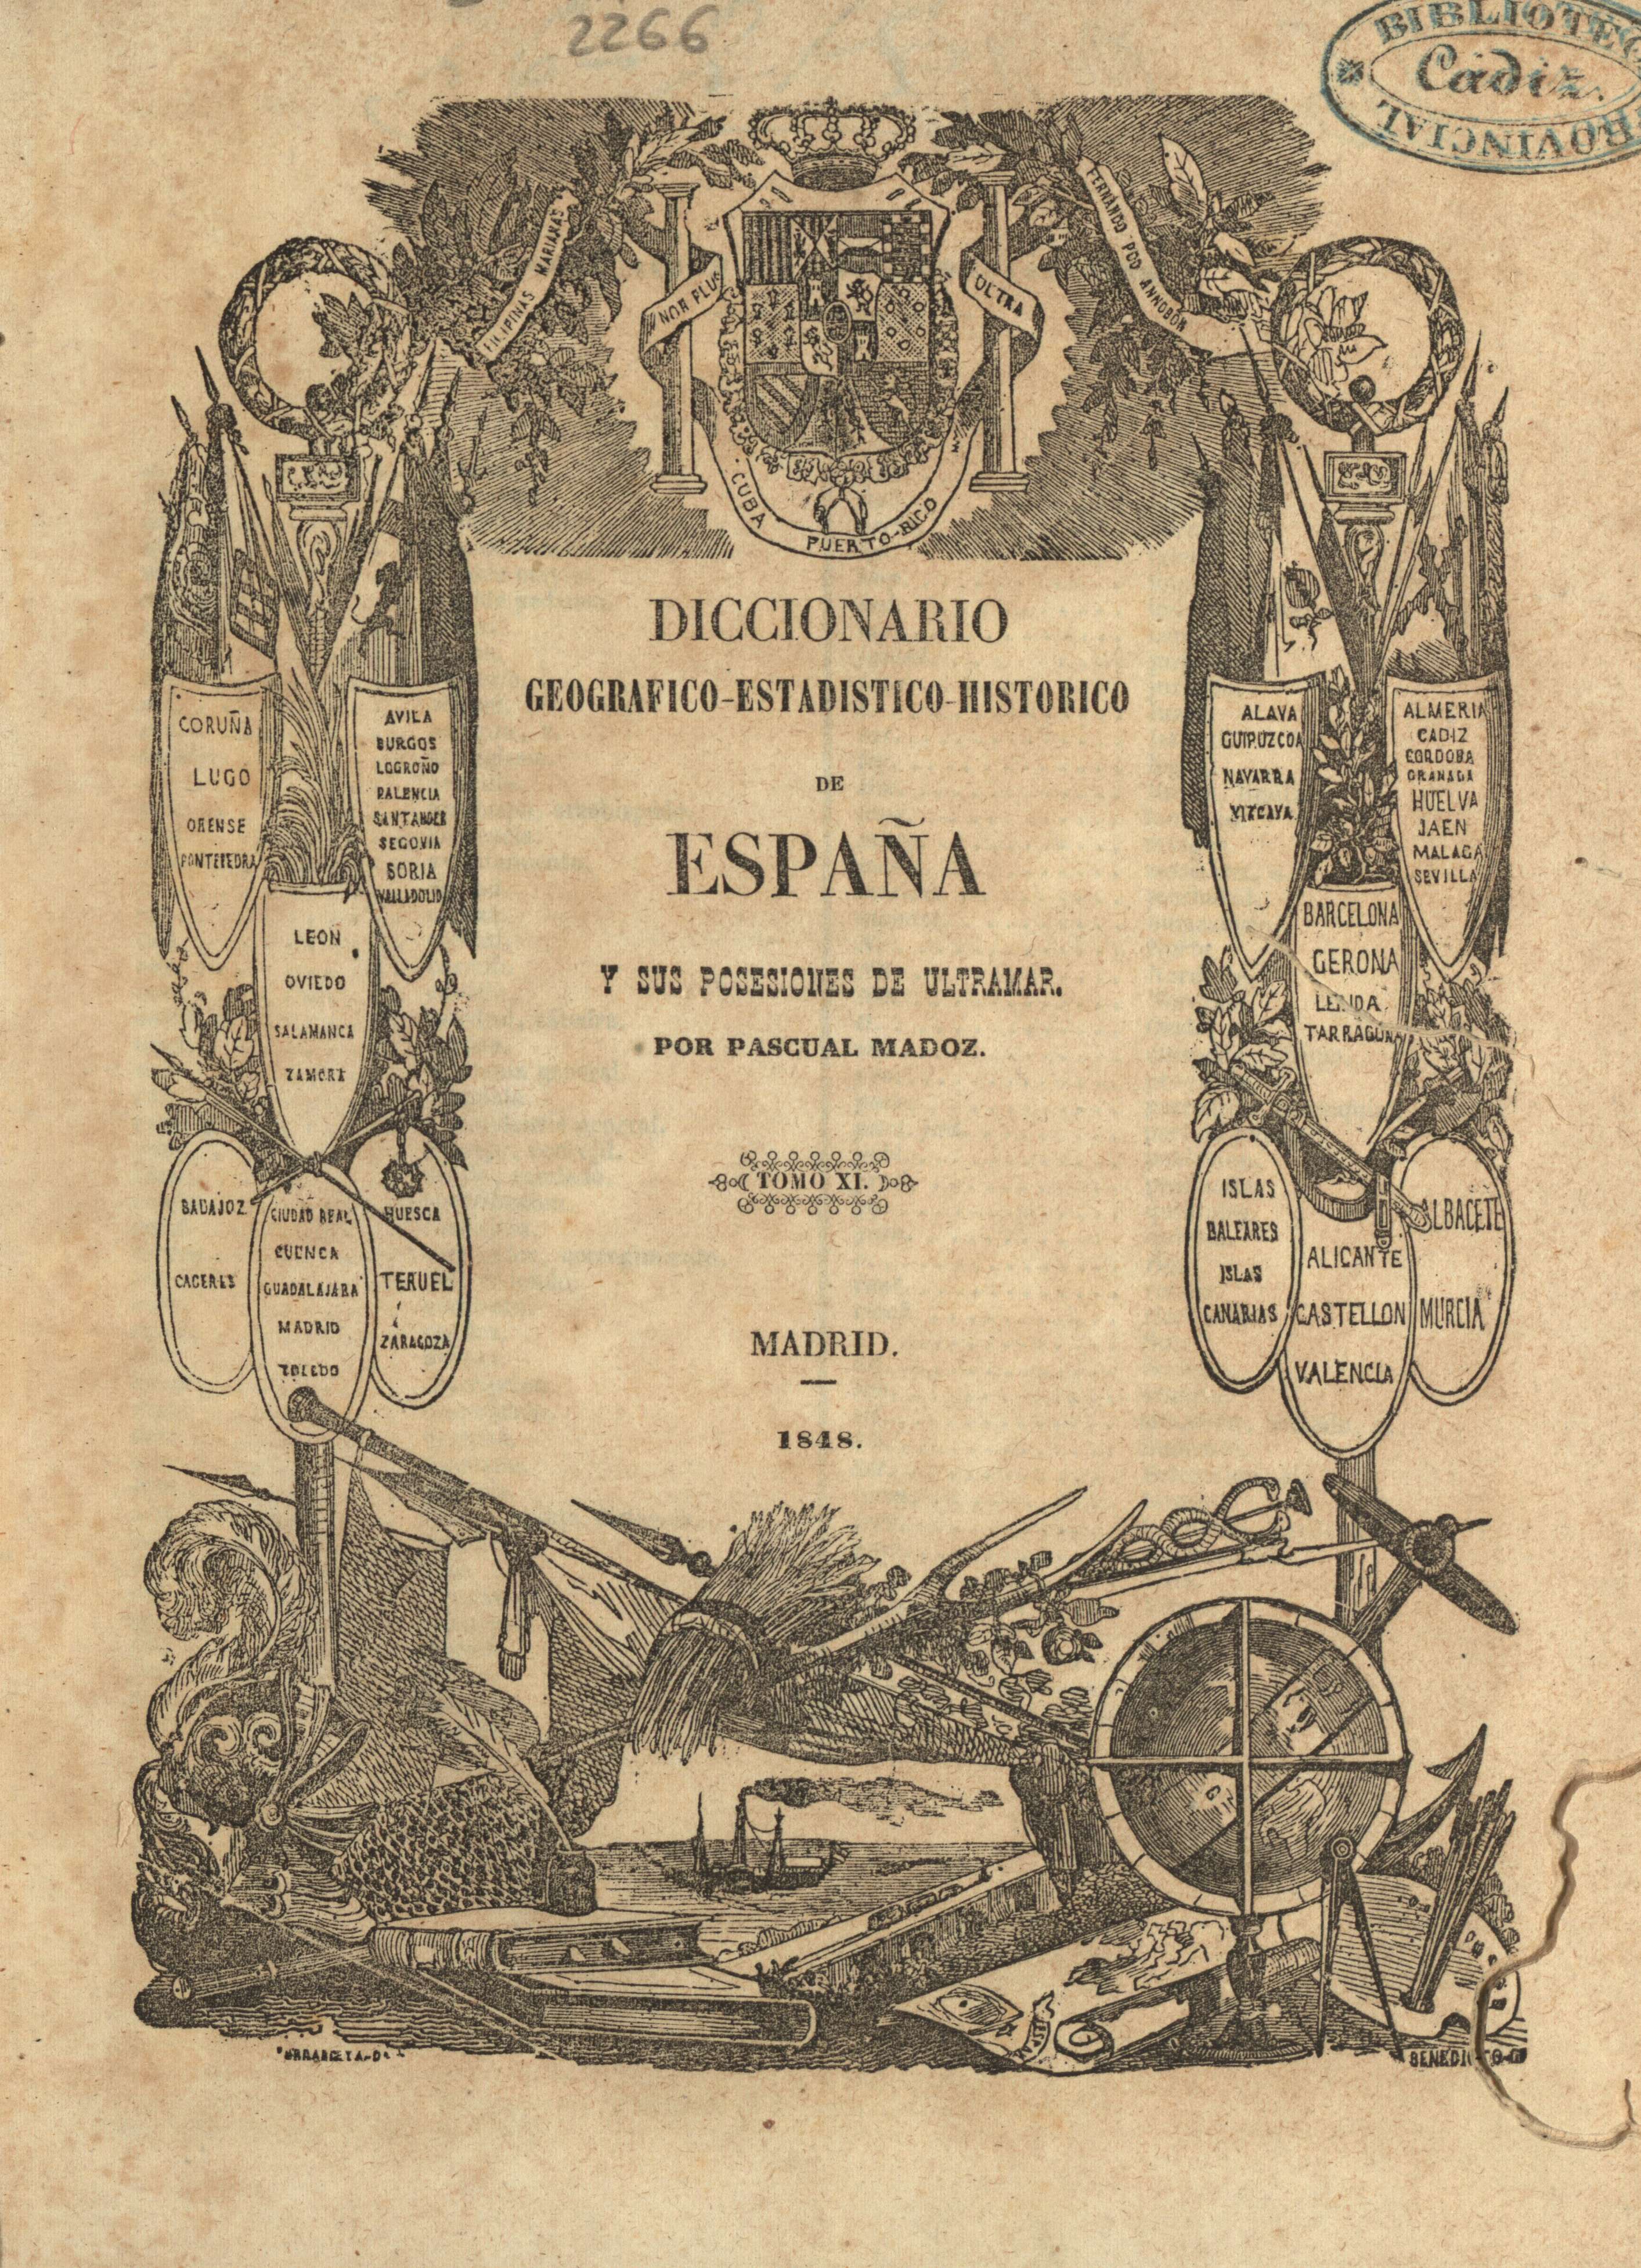 Diccionario geografico-estadistico-historico de España y sus posesiones de ultramar. Tomo XI